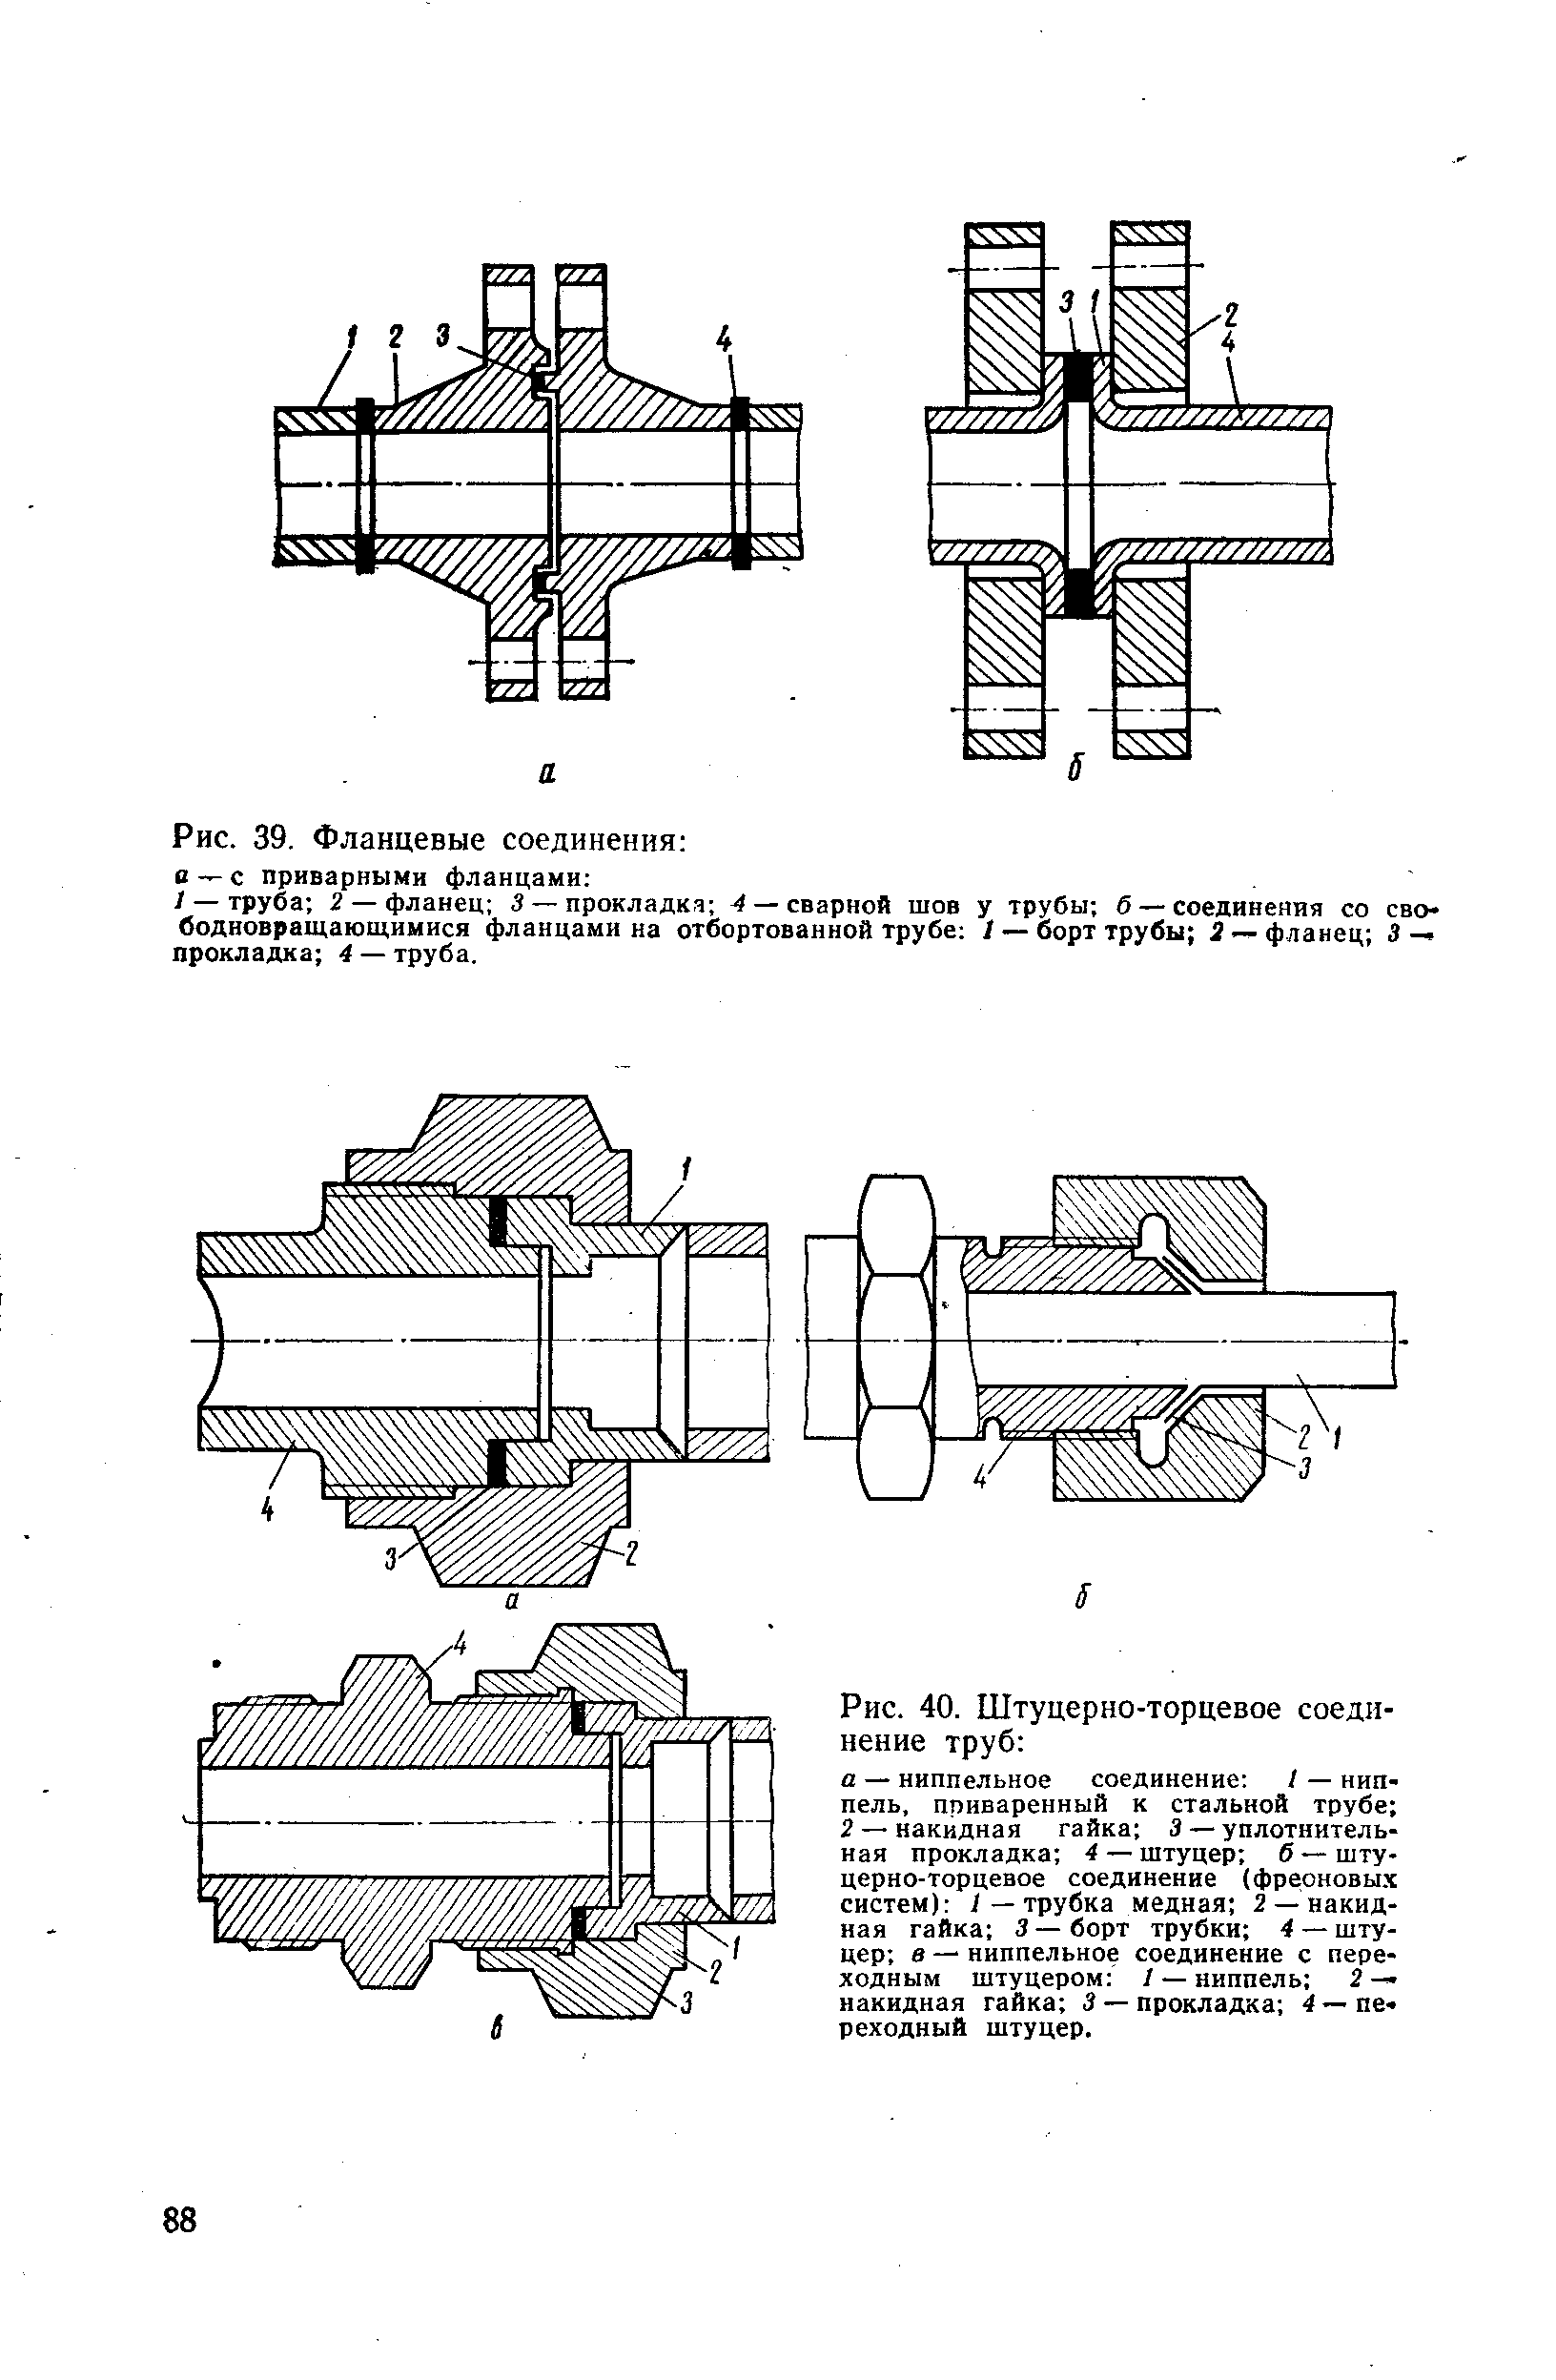 Инструкция по технологии стыковой сварки полиэтиленовых труб